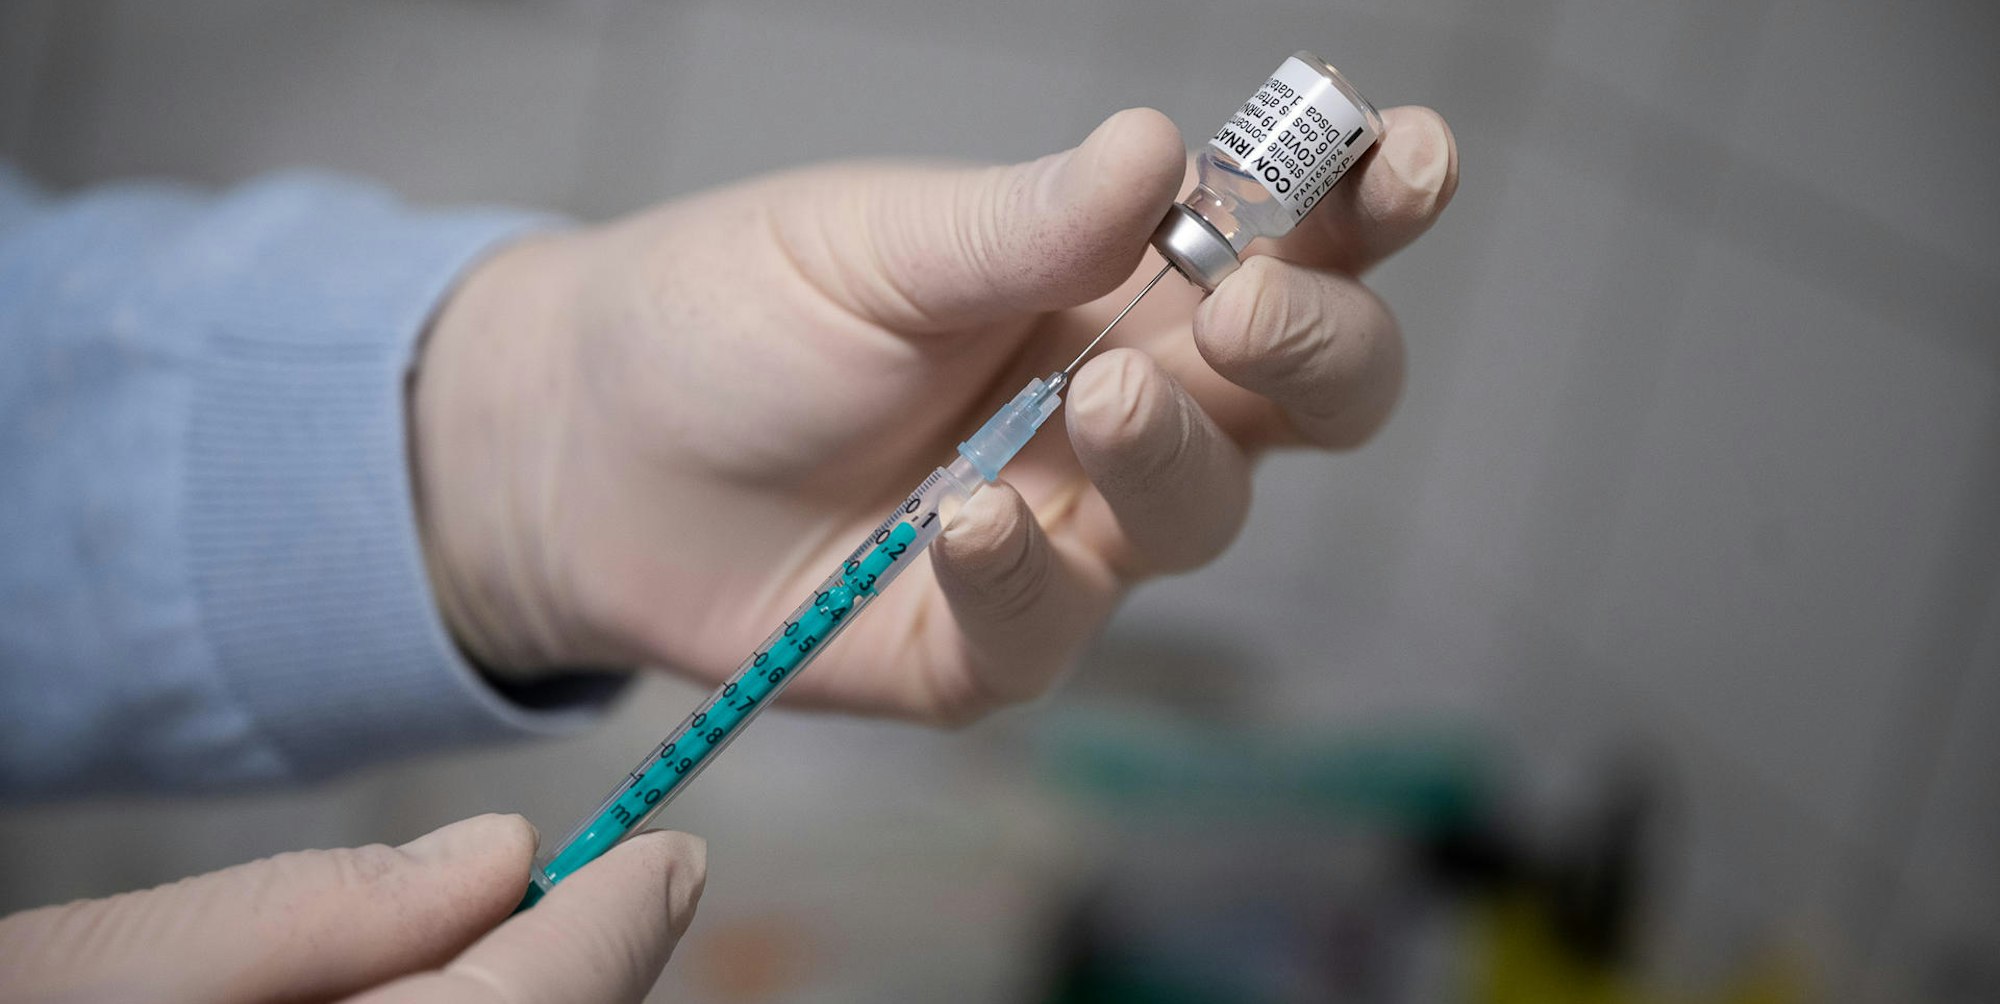 Arzt füllt Spritze mit Impfstoff